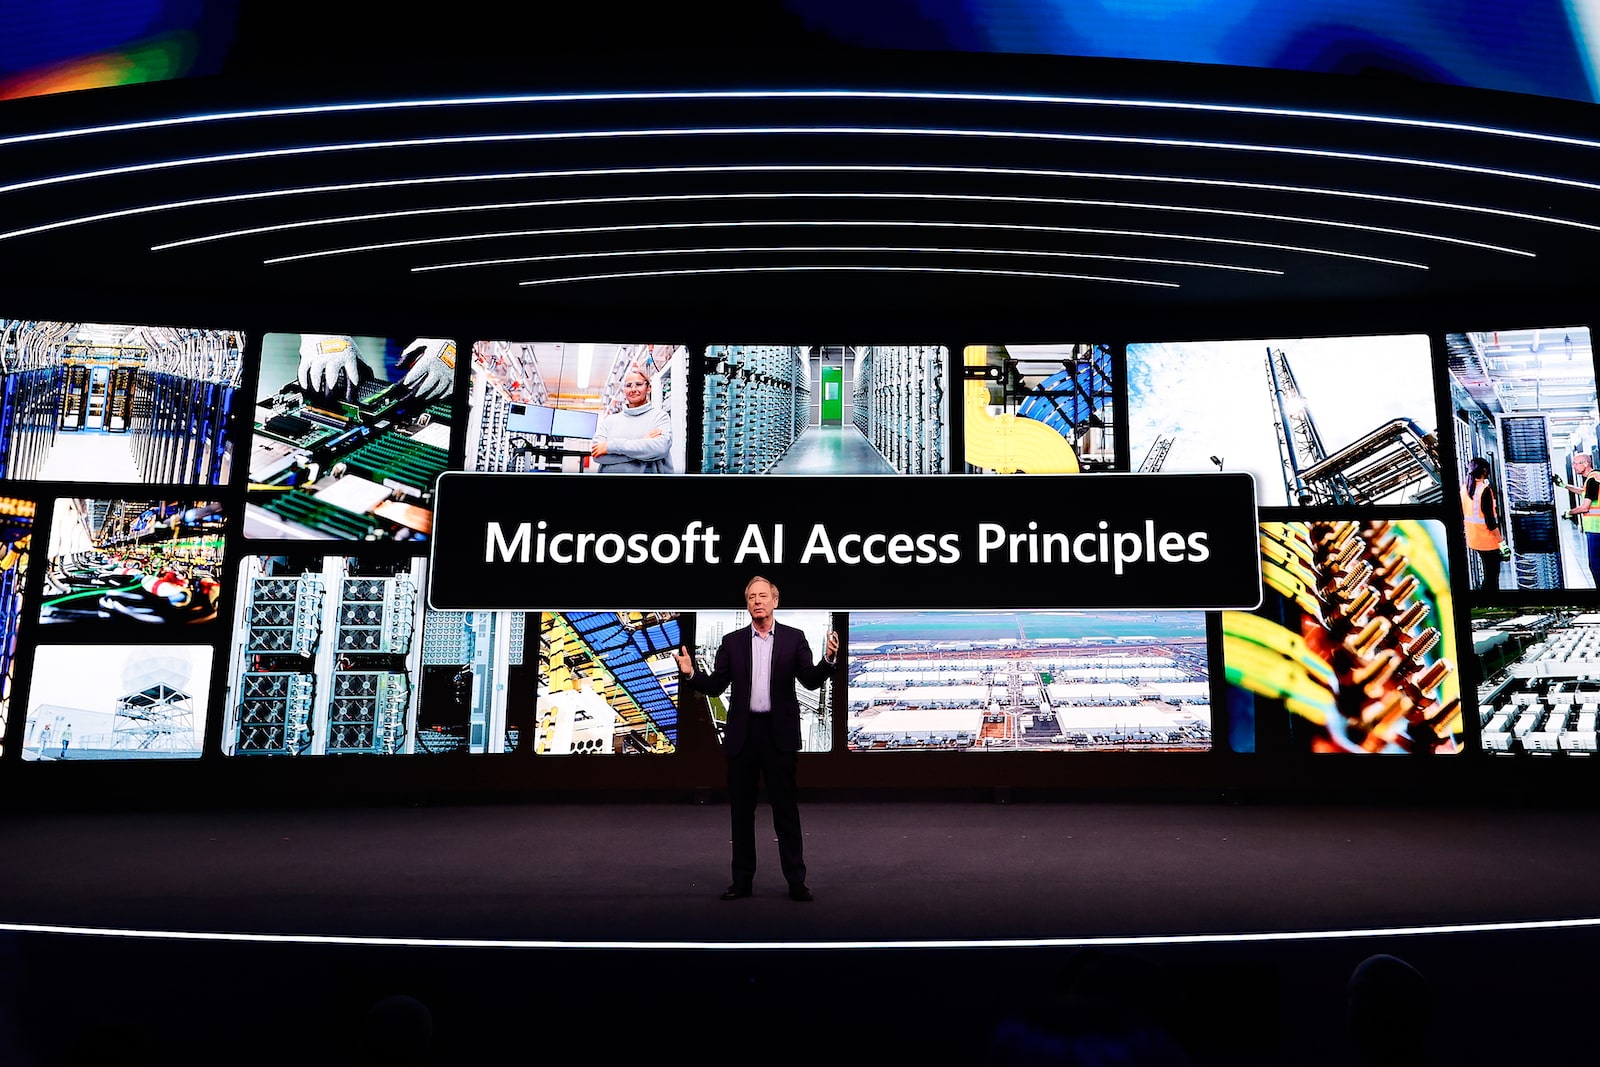 一名身穿西装的男子站在舞台上，屏幕前写着“微软人工智能接入原则”，背景是许多小型行业照片